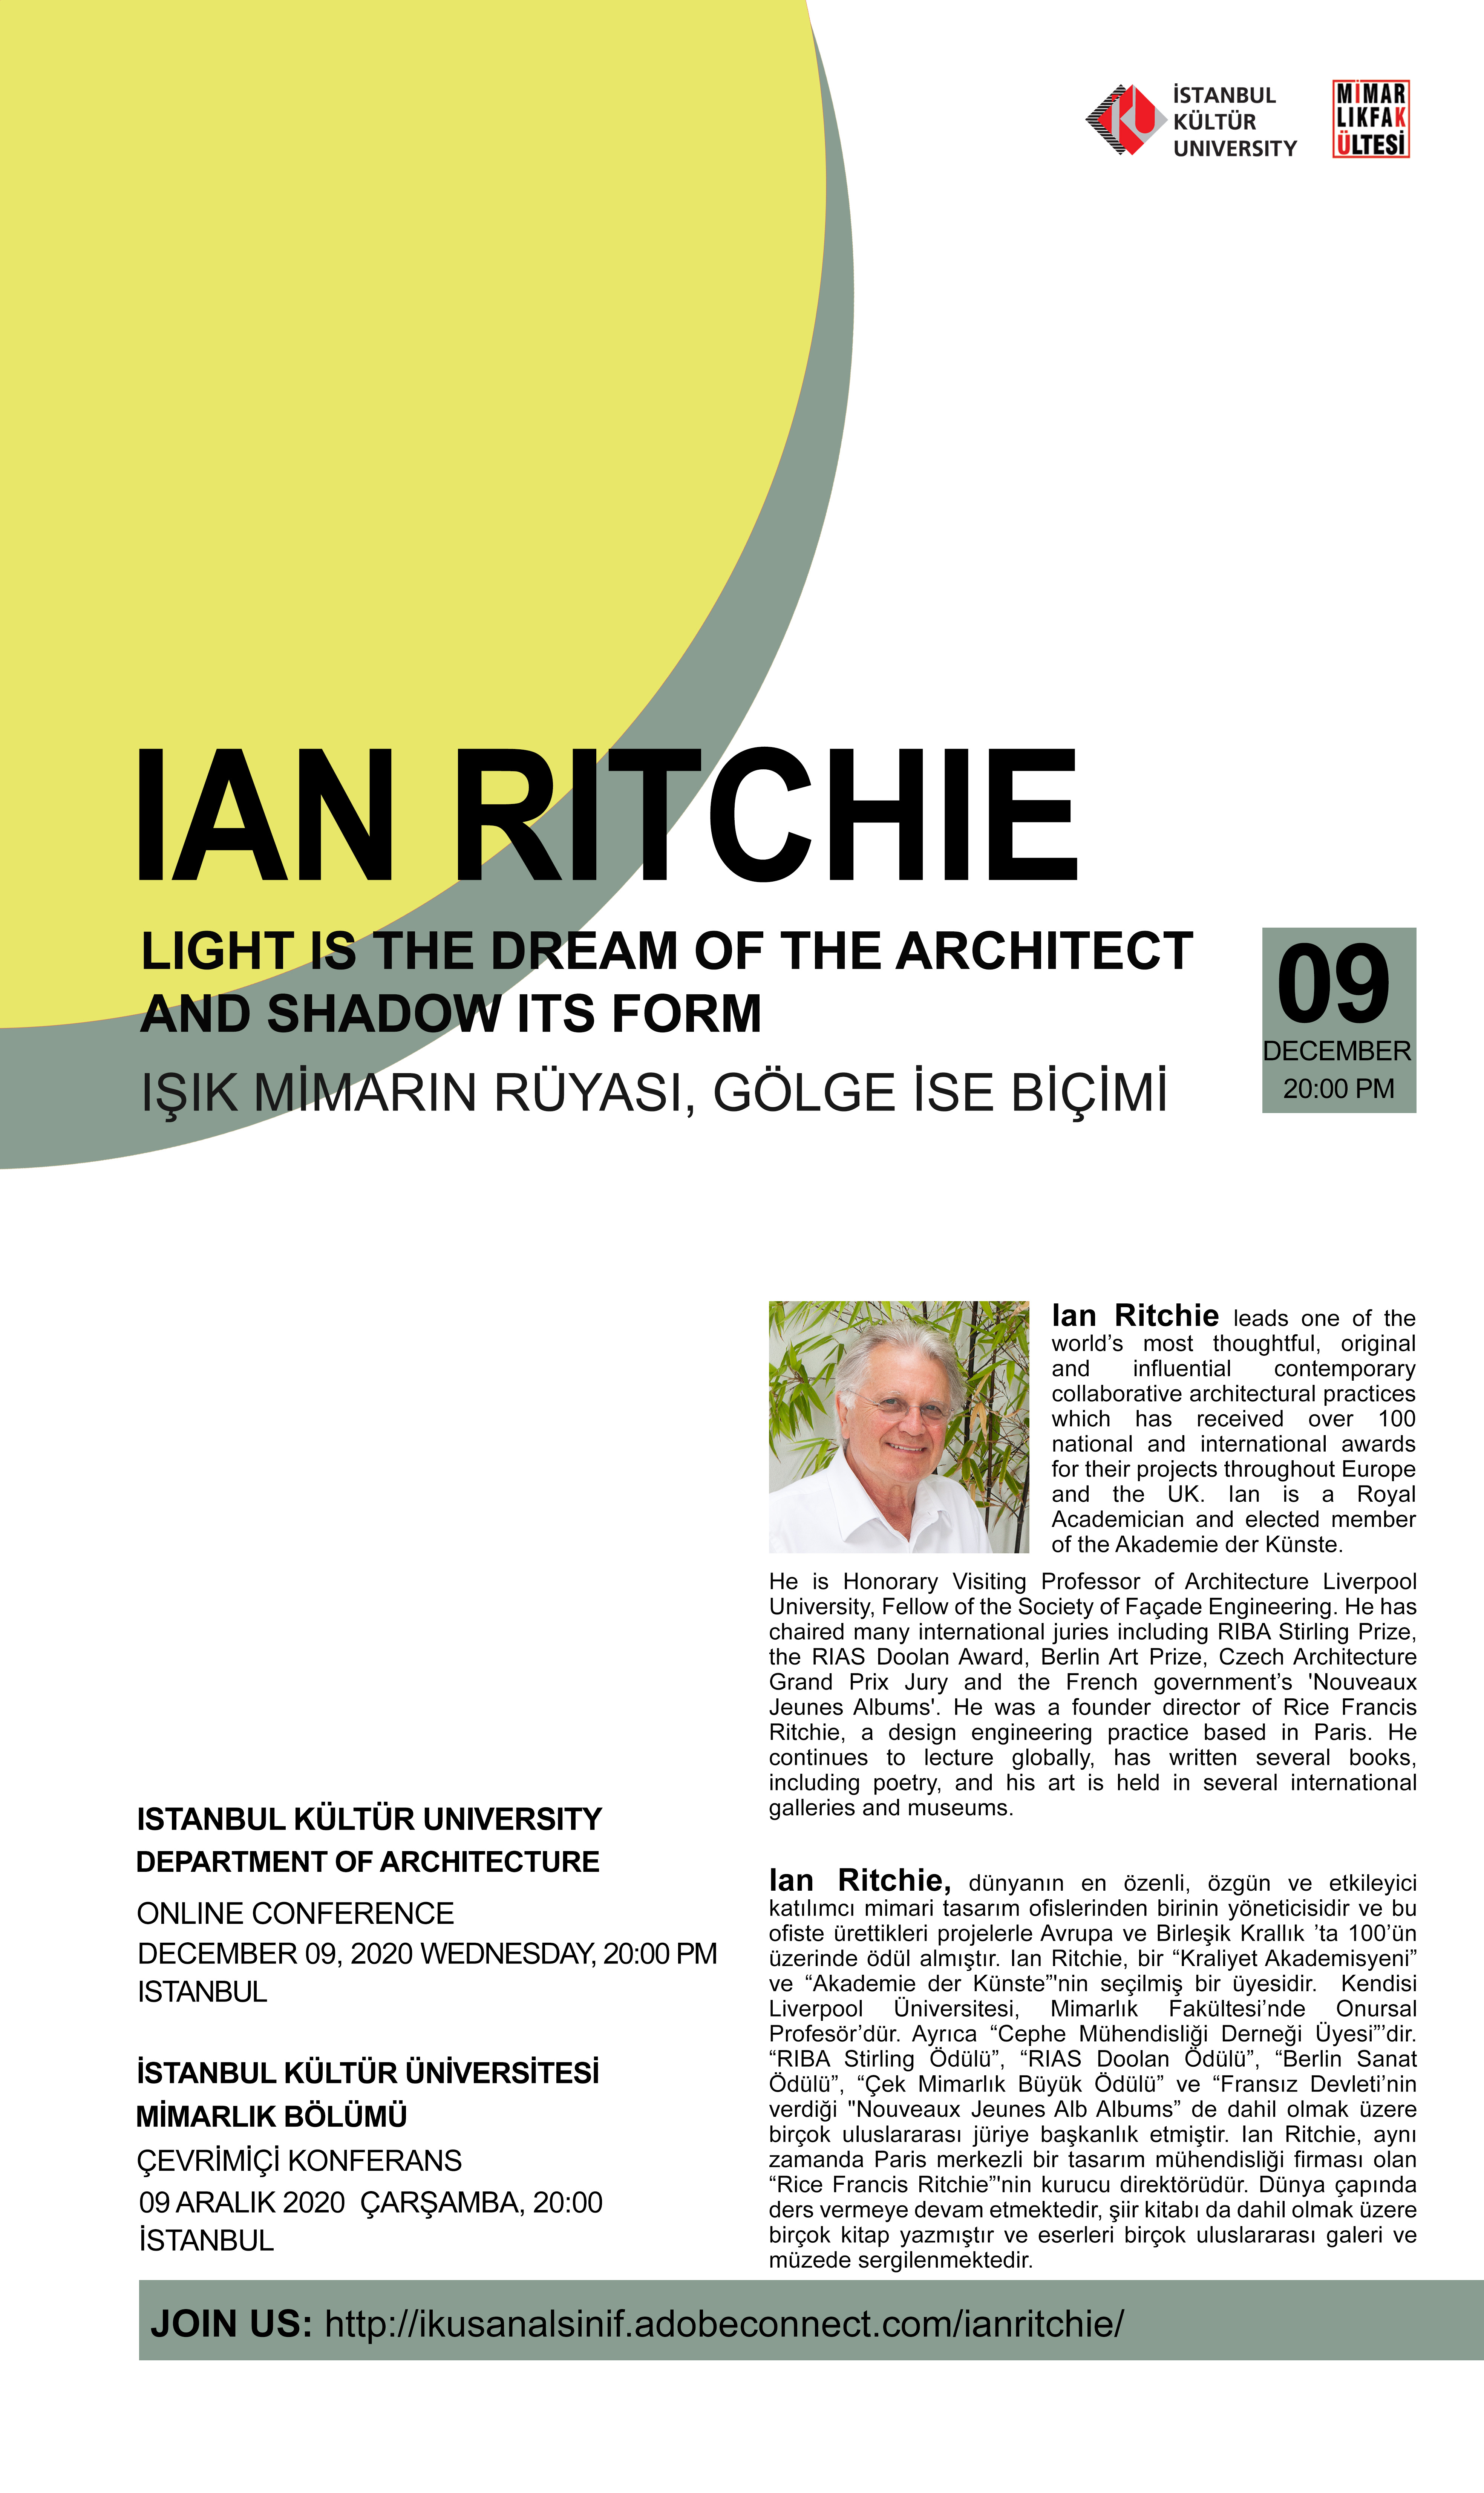 Ian Ritchie - “Işık Mimarın Rüyası, Gölge ise Biçimi”